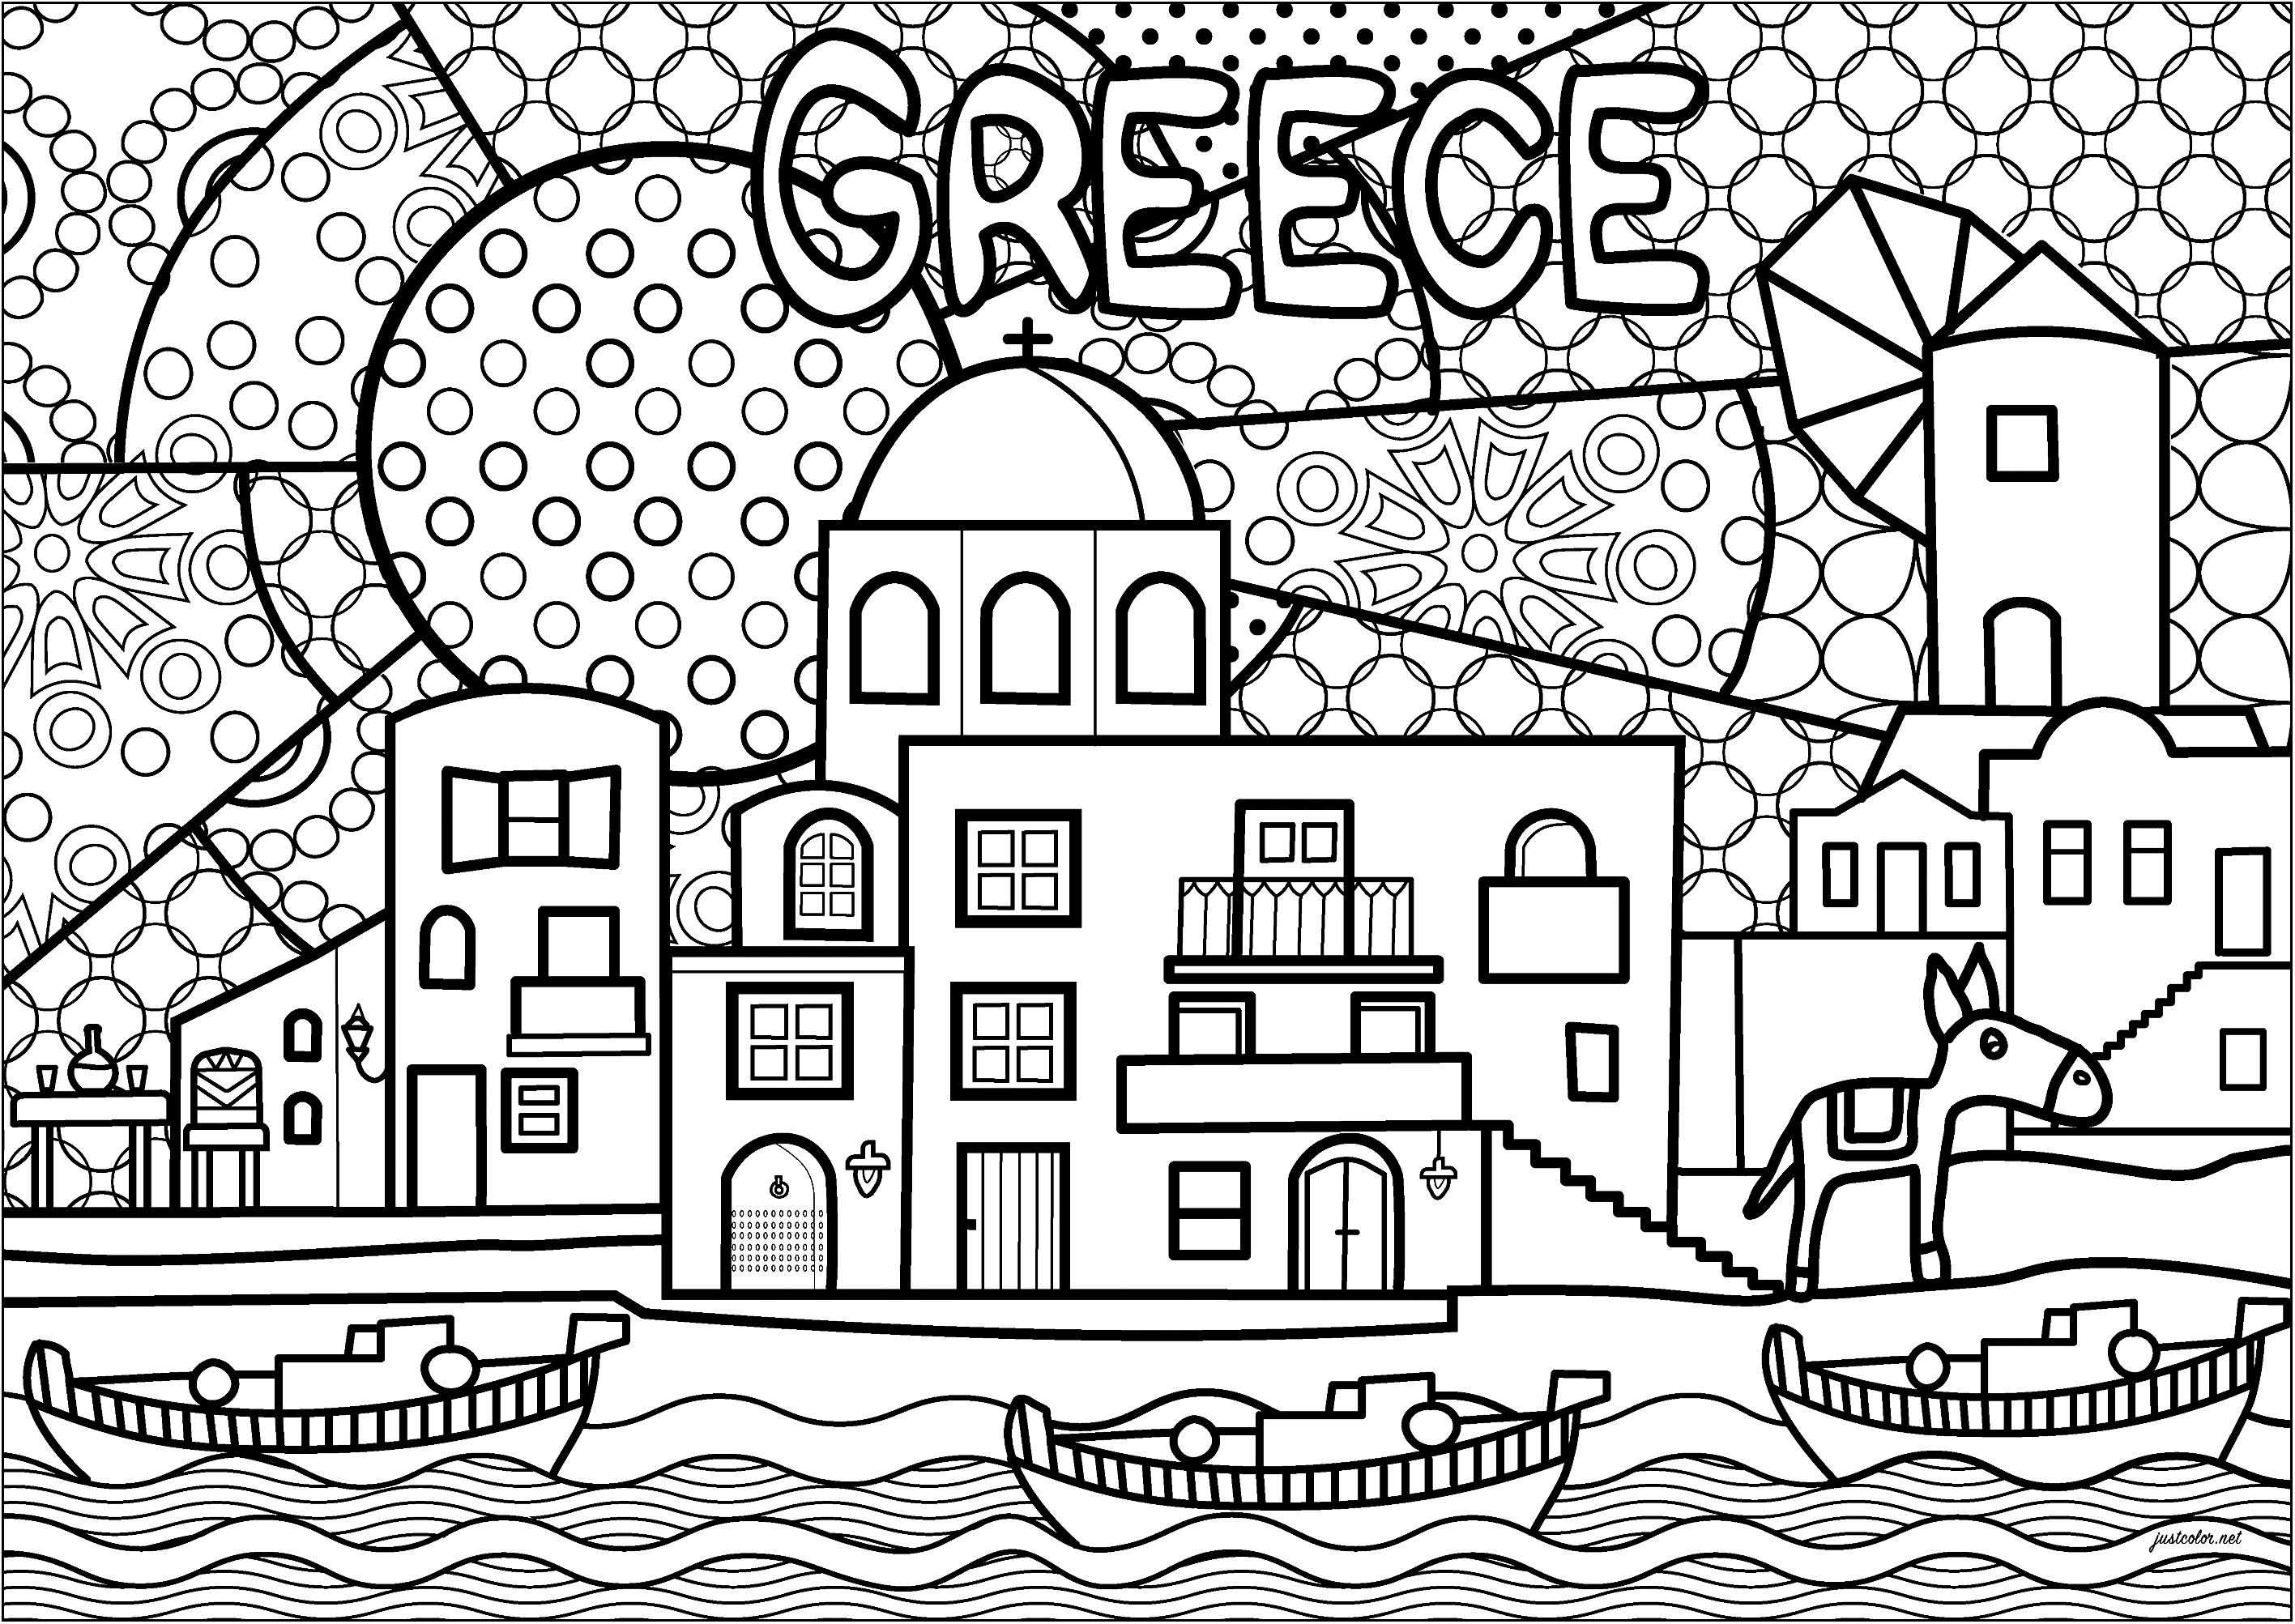 Hübsches griechisches Dorf mit typischer Architektur. Dieses originelle Malbuch zeigt eine Mühle, Dorfhäuser, einen Esel und Boote, die aus dem Hafen kommen.Der Hintergrund zeigt einzigartige Malmotive, Künstler : Morgan